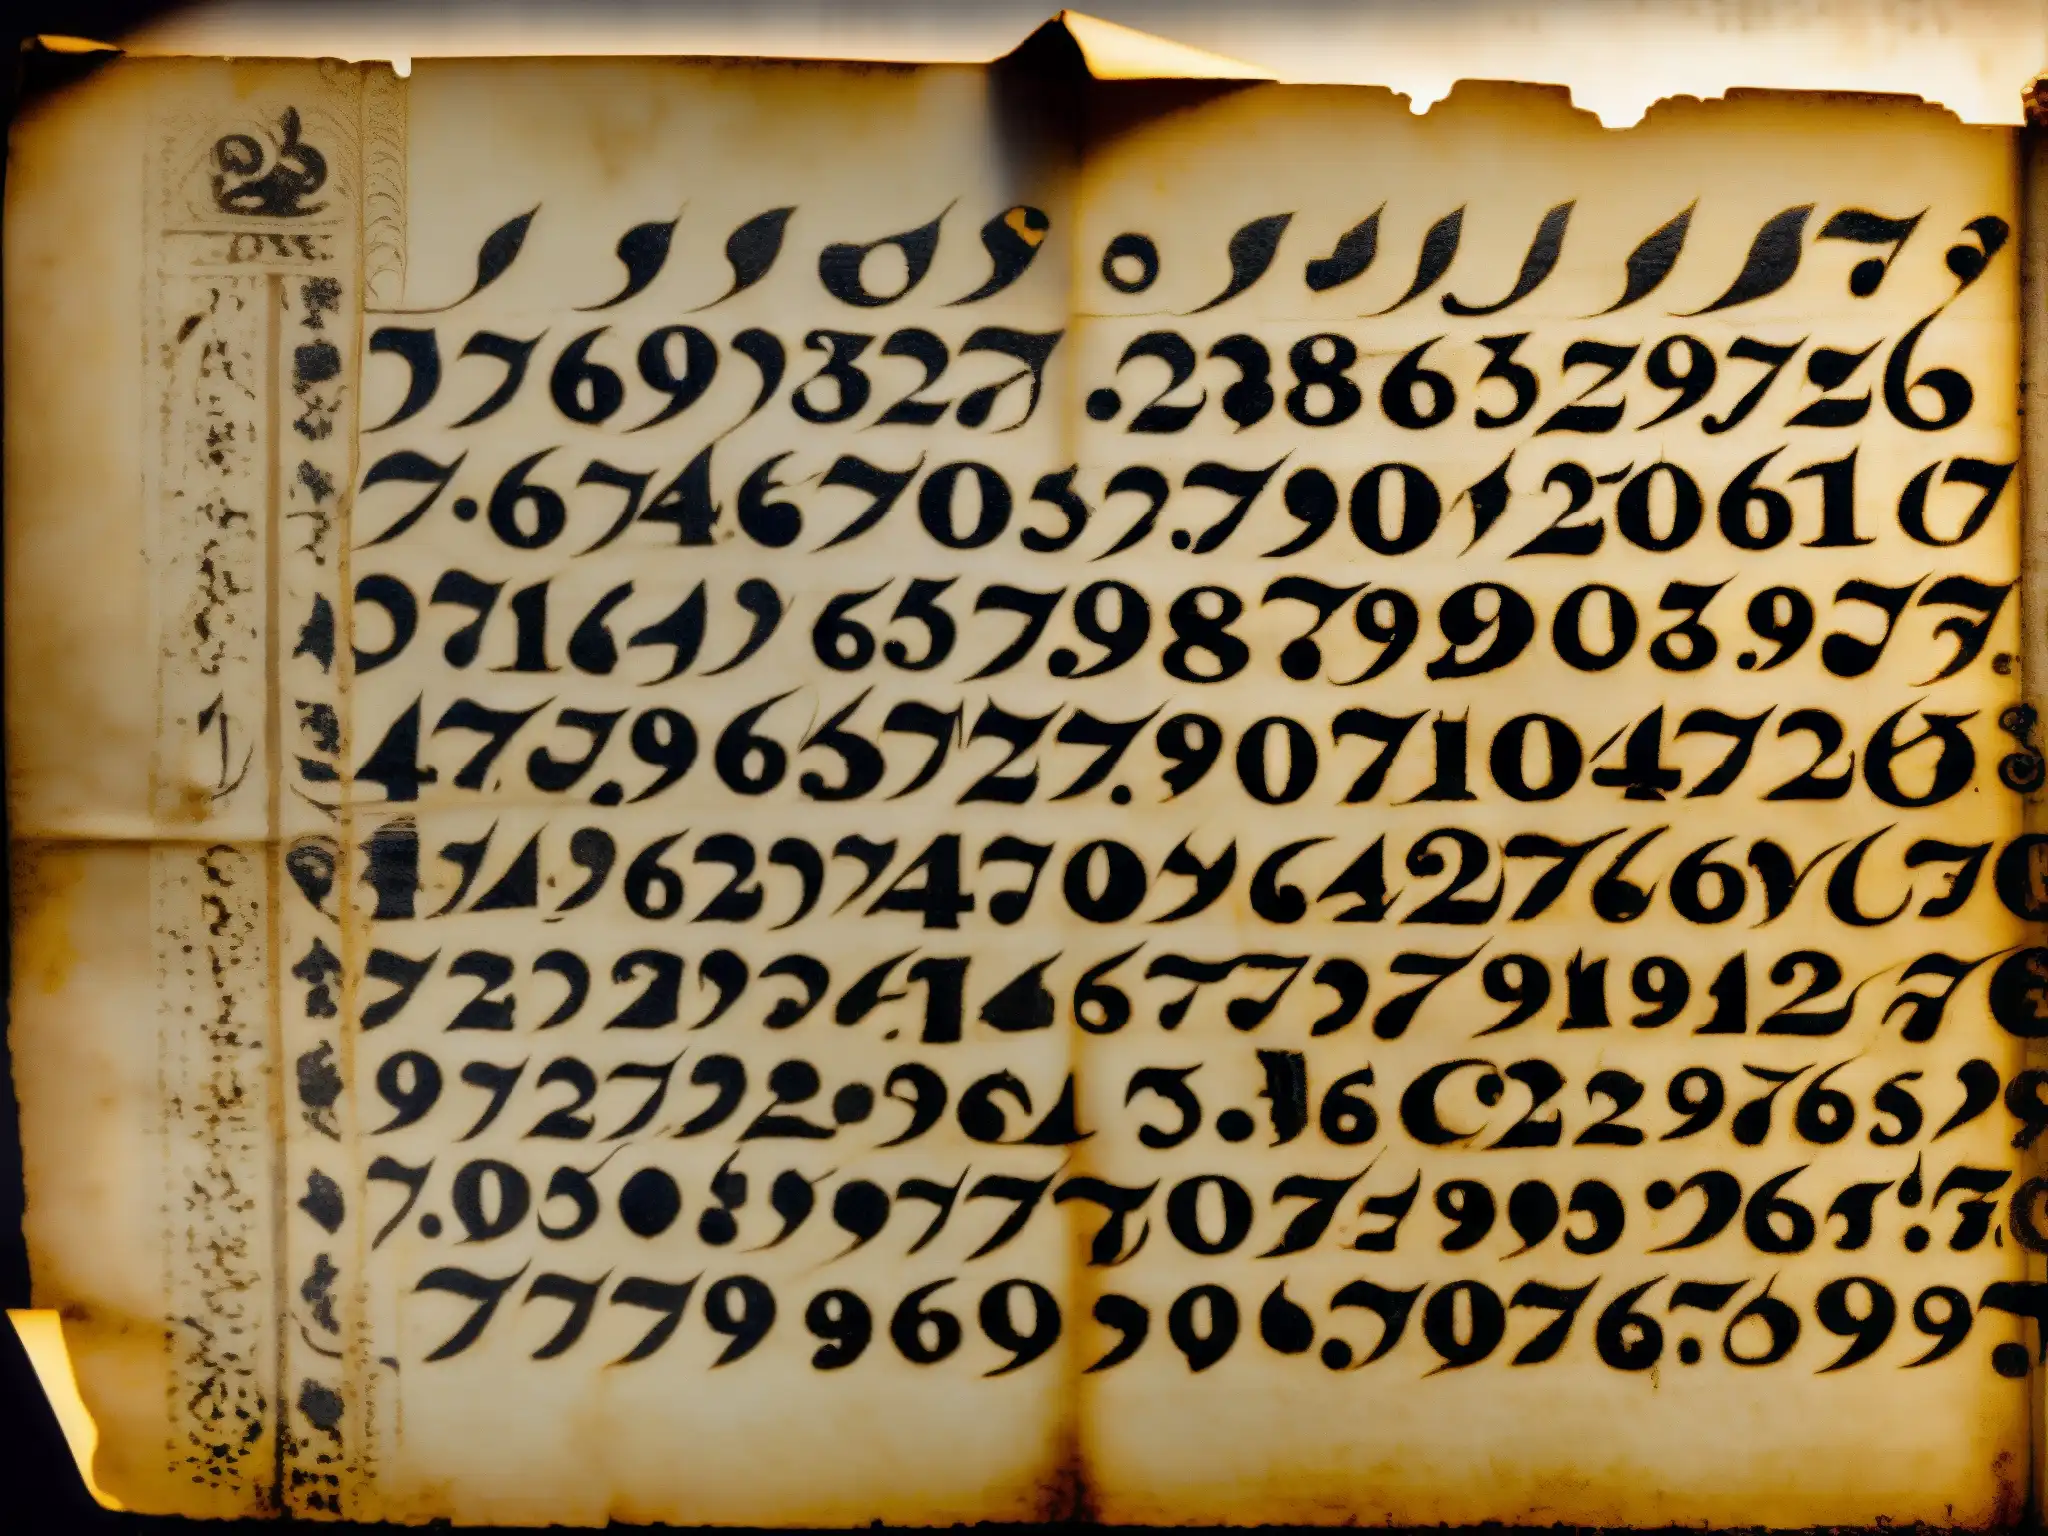 Un viejo pergamino con números escritos a mano y símbolos misteriosos, evocando mitos urbanos y una atmósfera de verdad oculta